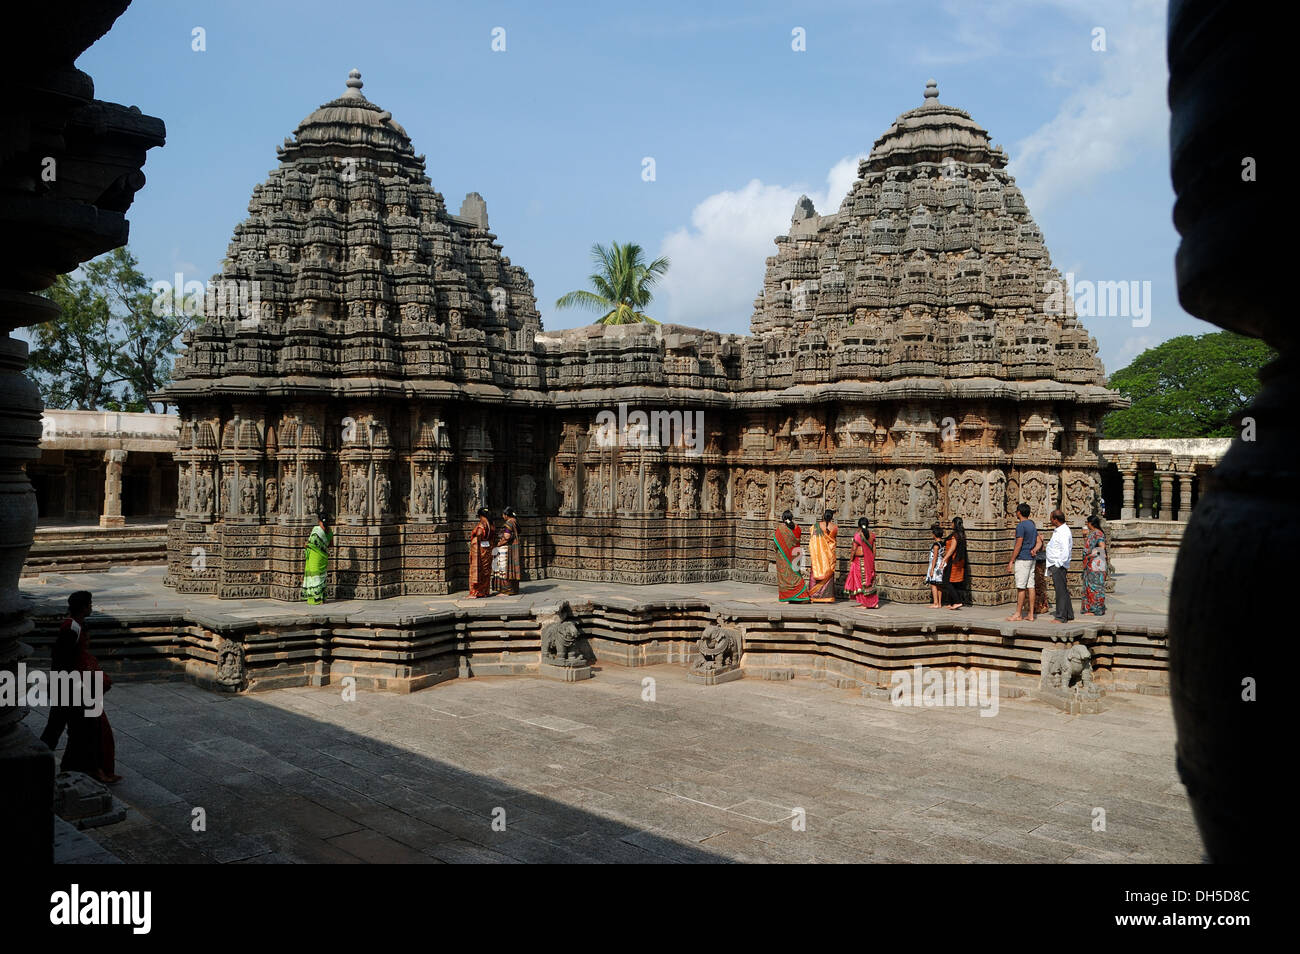 Temple hindou à somnathpur, Karnataka, Inde.Ce temple hoysala est célèbre pour les sculptures sur pierre. Banque D'Images